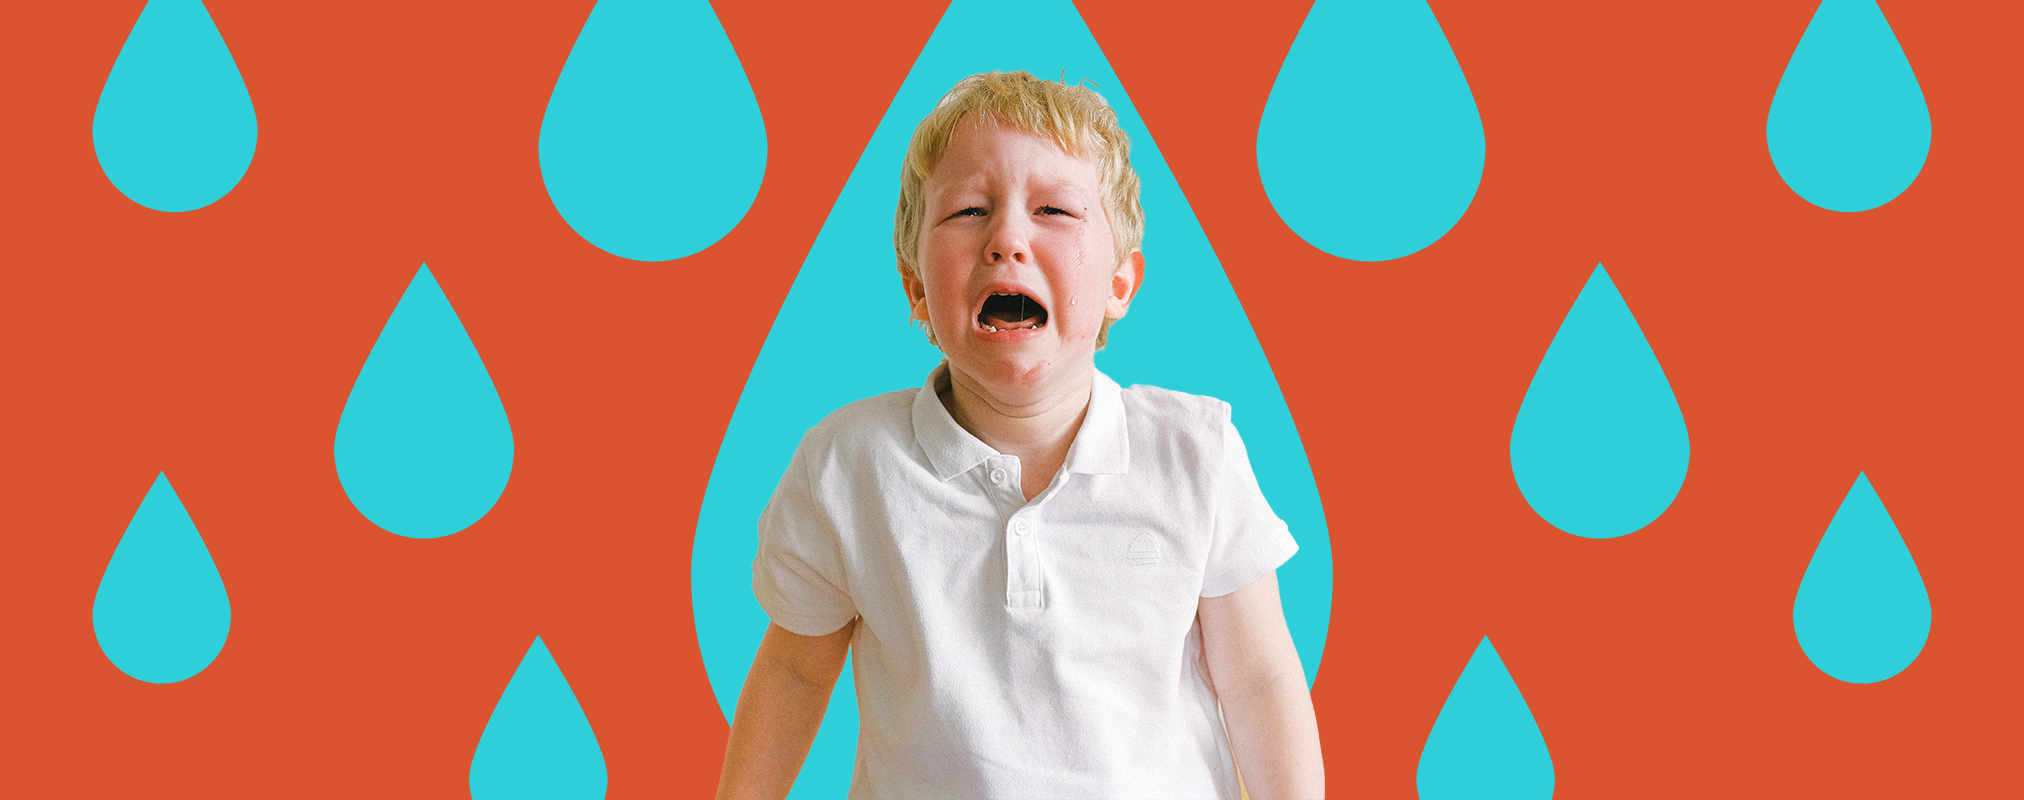 Детский плач по-разному влияет на мужчин и женщин